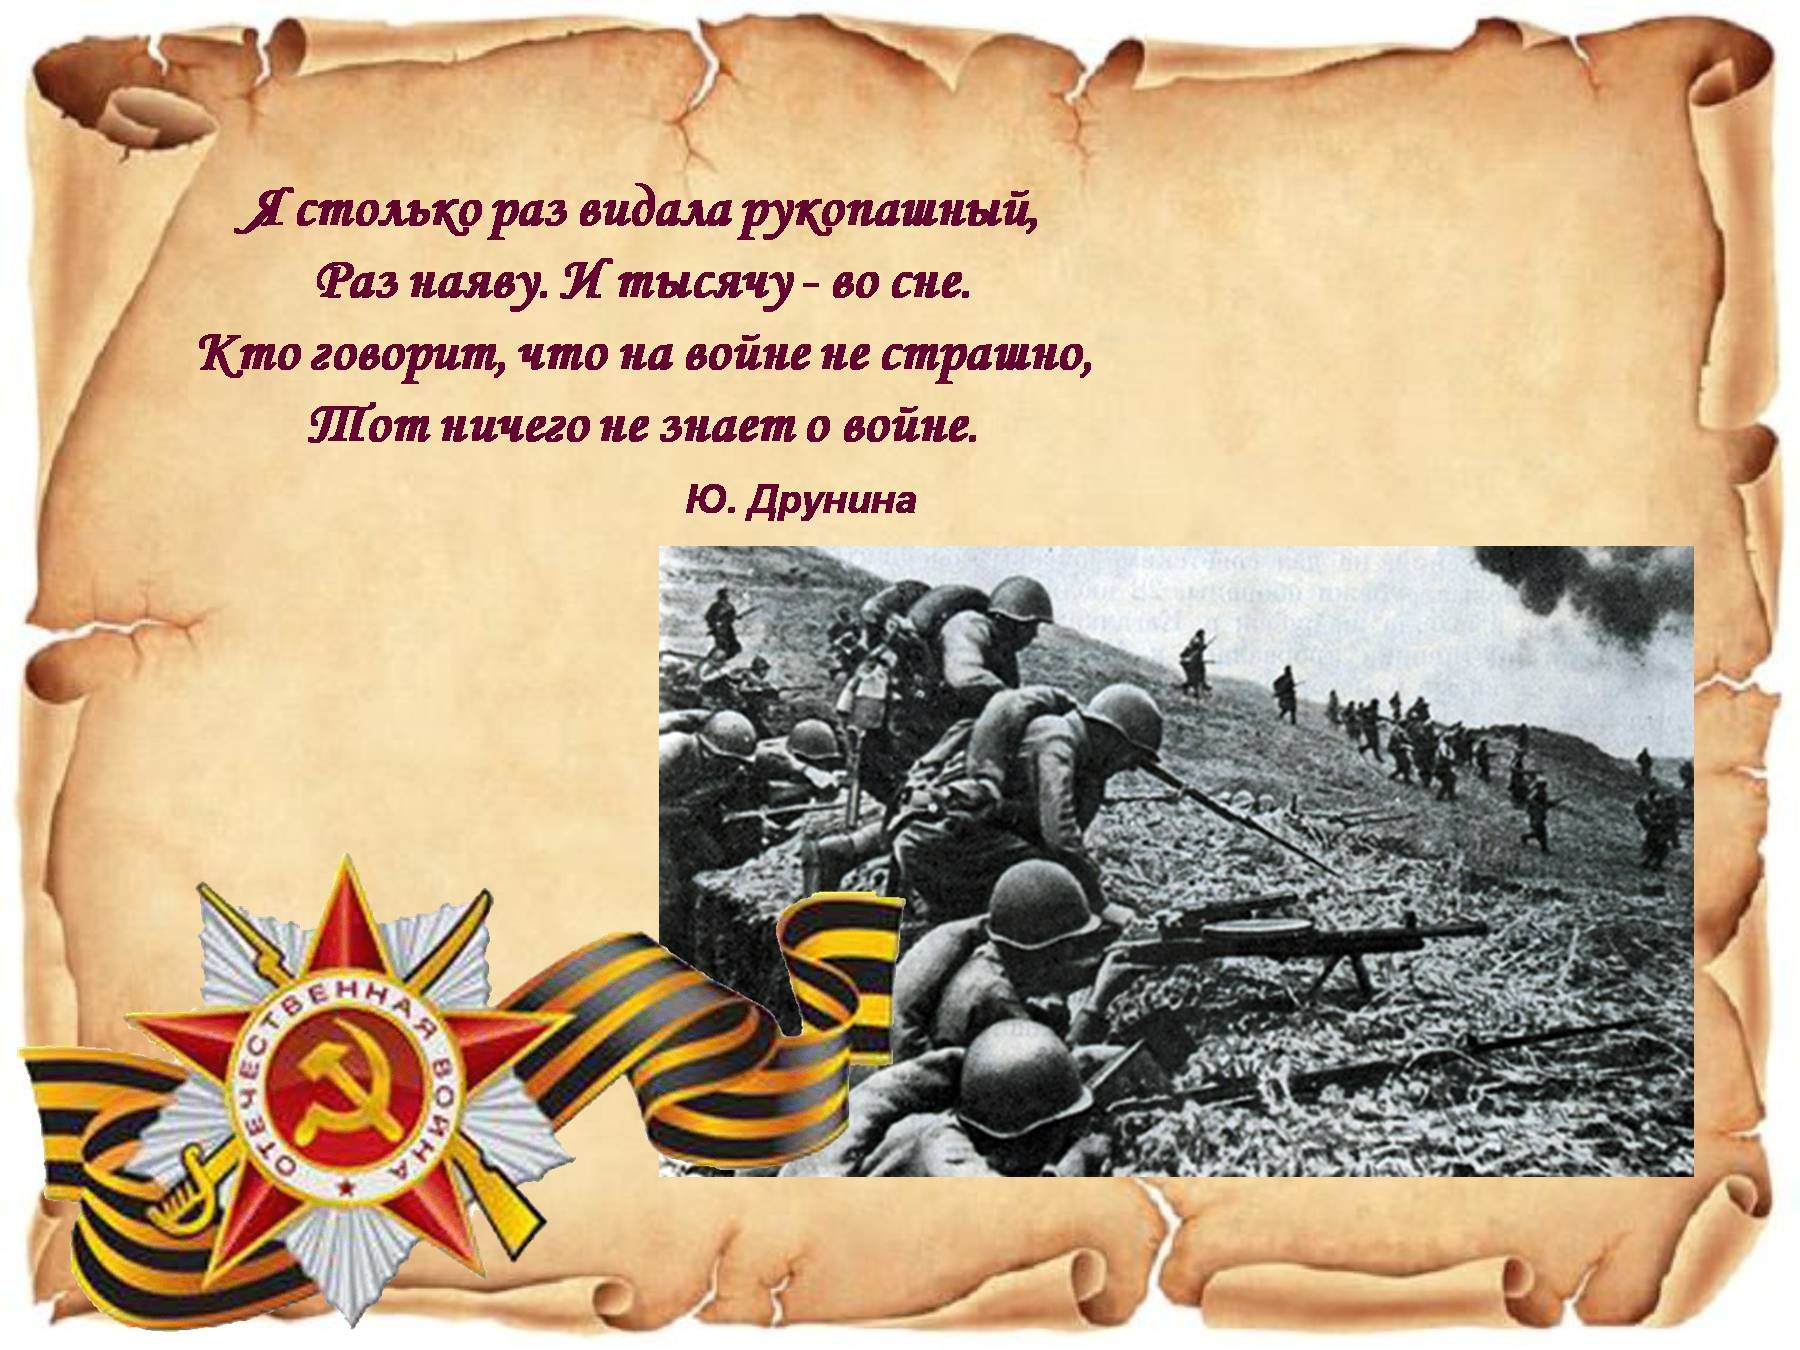 Стихотворения 1945 года. Цитаты о Великой Отечественной войне. Я столько раз видала рукопашный. Фразы о войне. Цитаты и высказывания о войне.